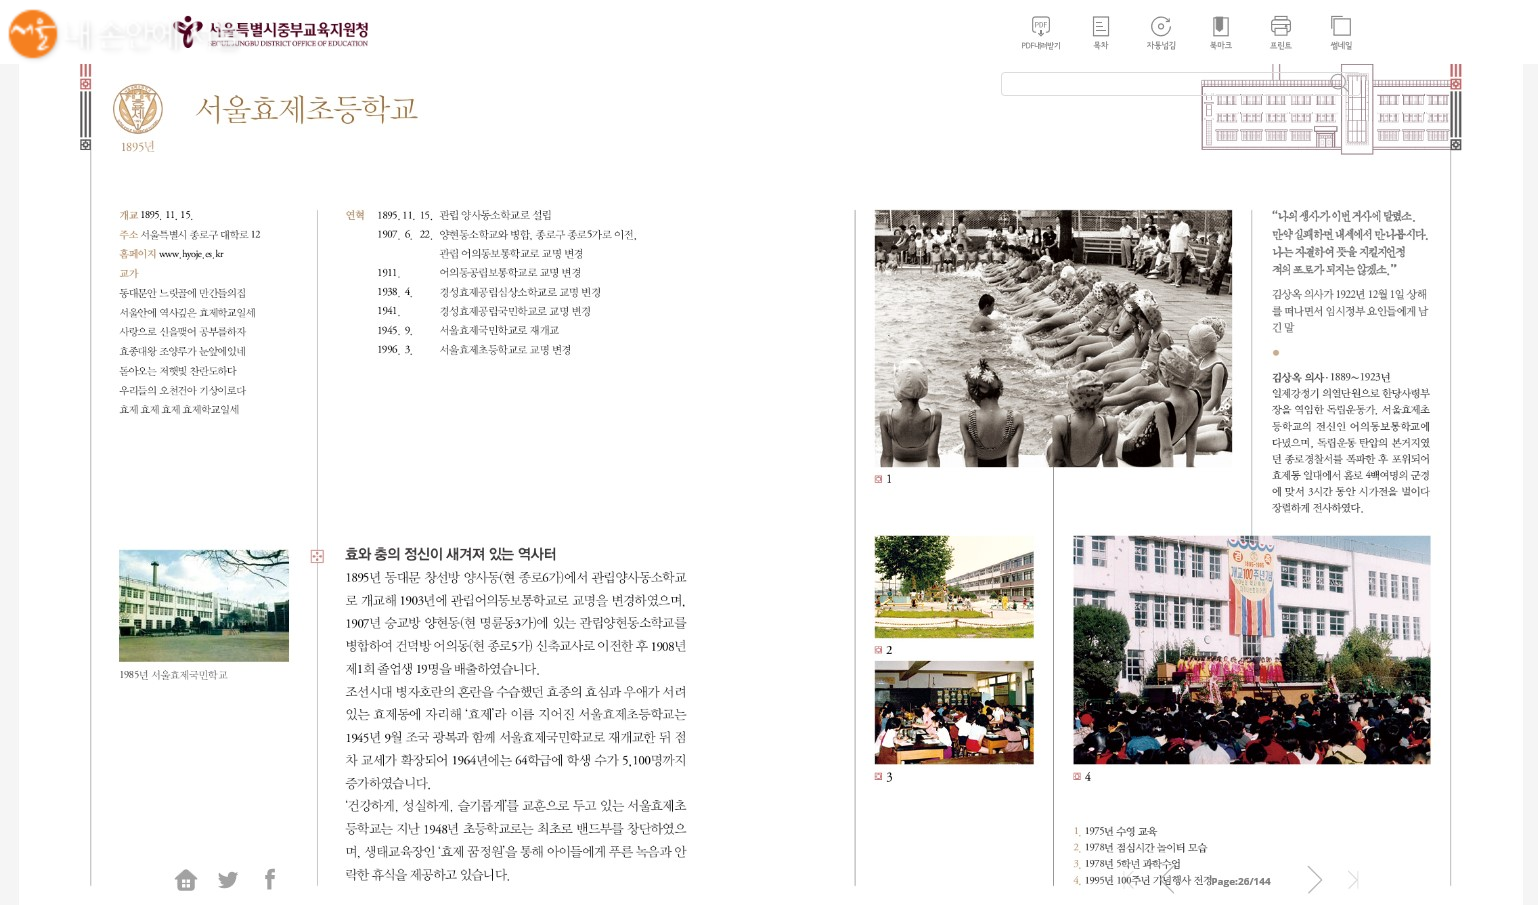 100년이 넘는 역사를 자랑하는 서울효제초등학교의 역사 이야기 